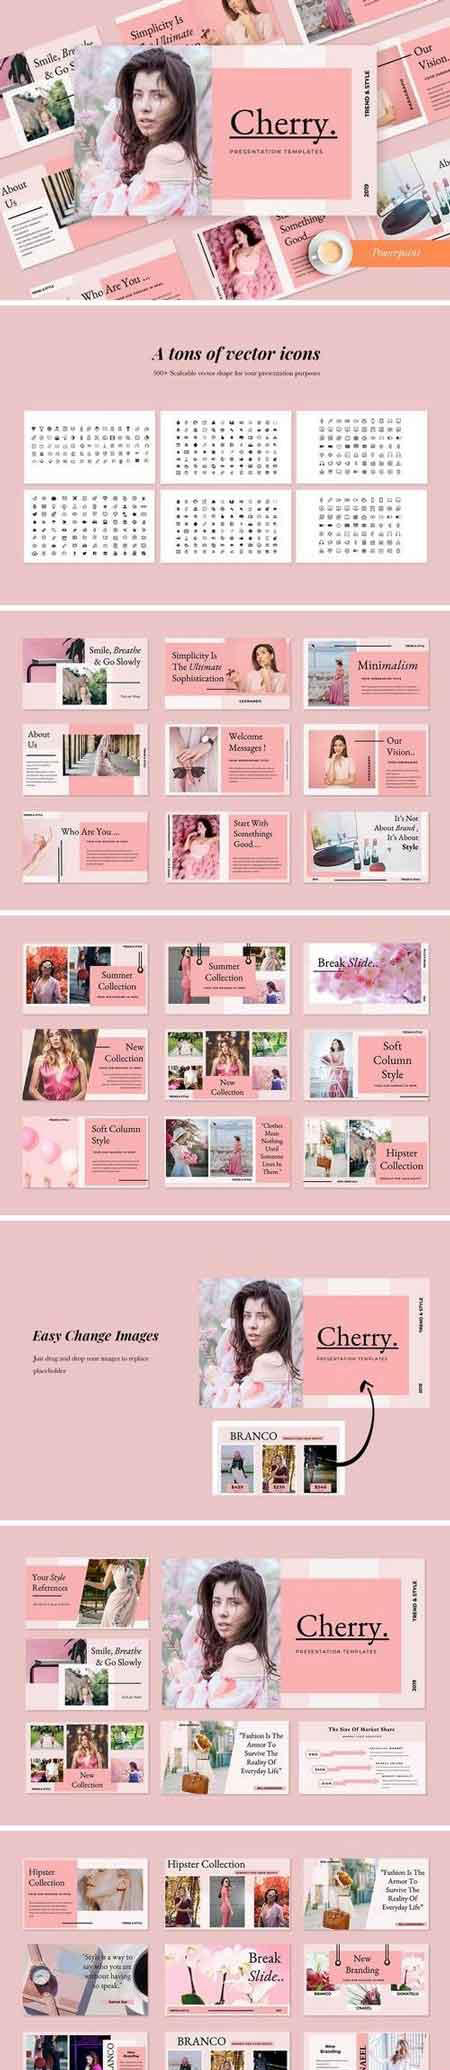 现代简约的粉红色化妆品设计师作品演示幻灯片模板 Modern Minimalist Pink Cosmetic Designer Work Presentation Slide Template插图